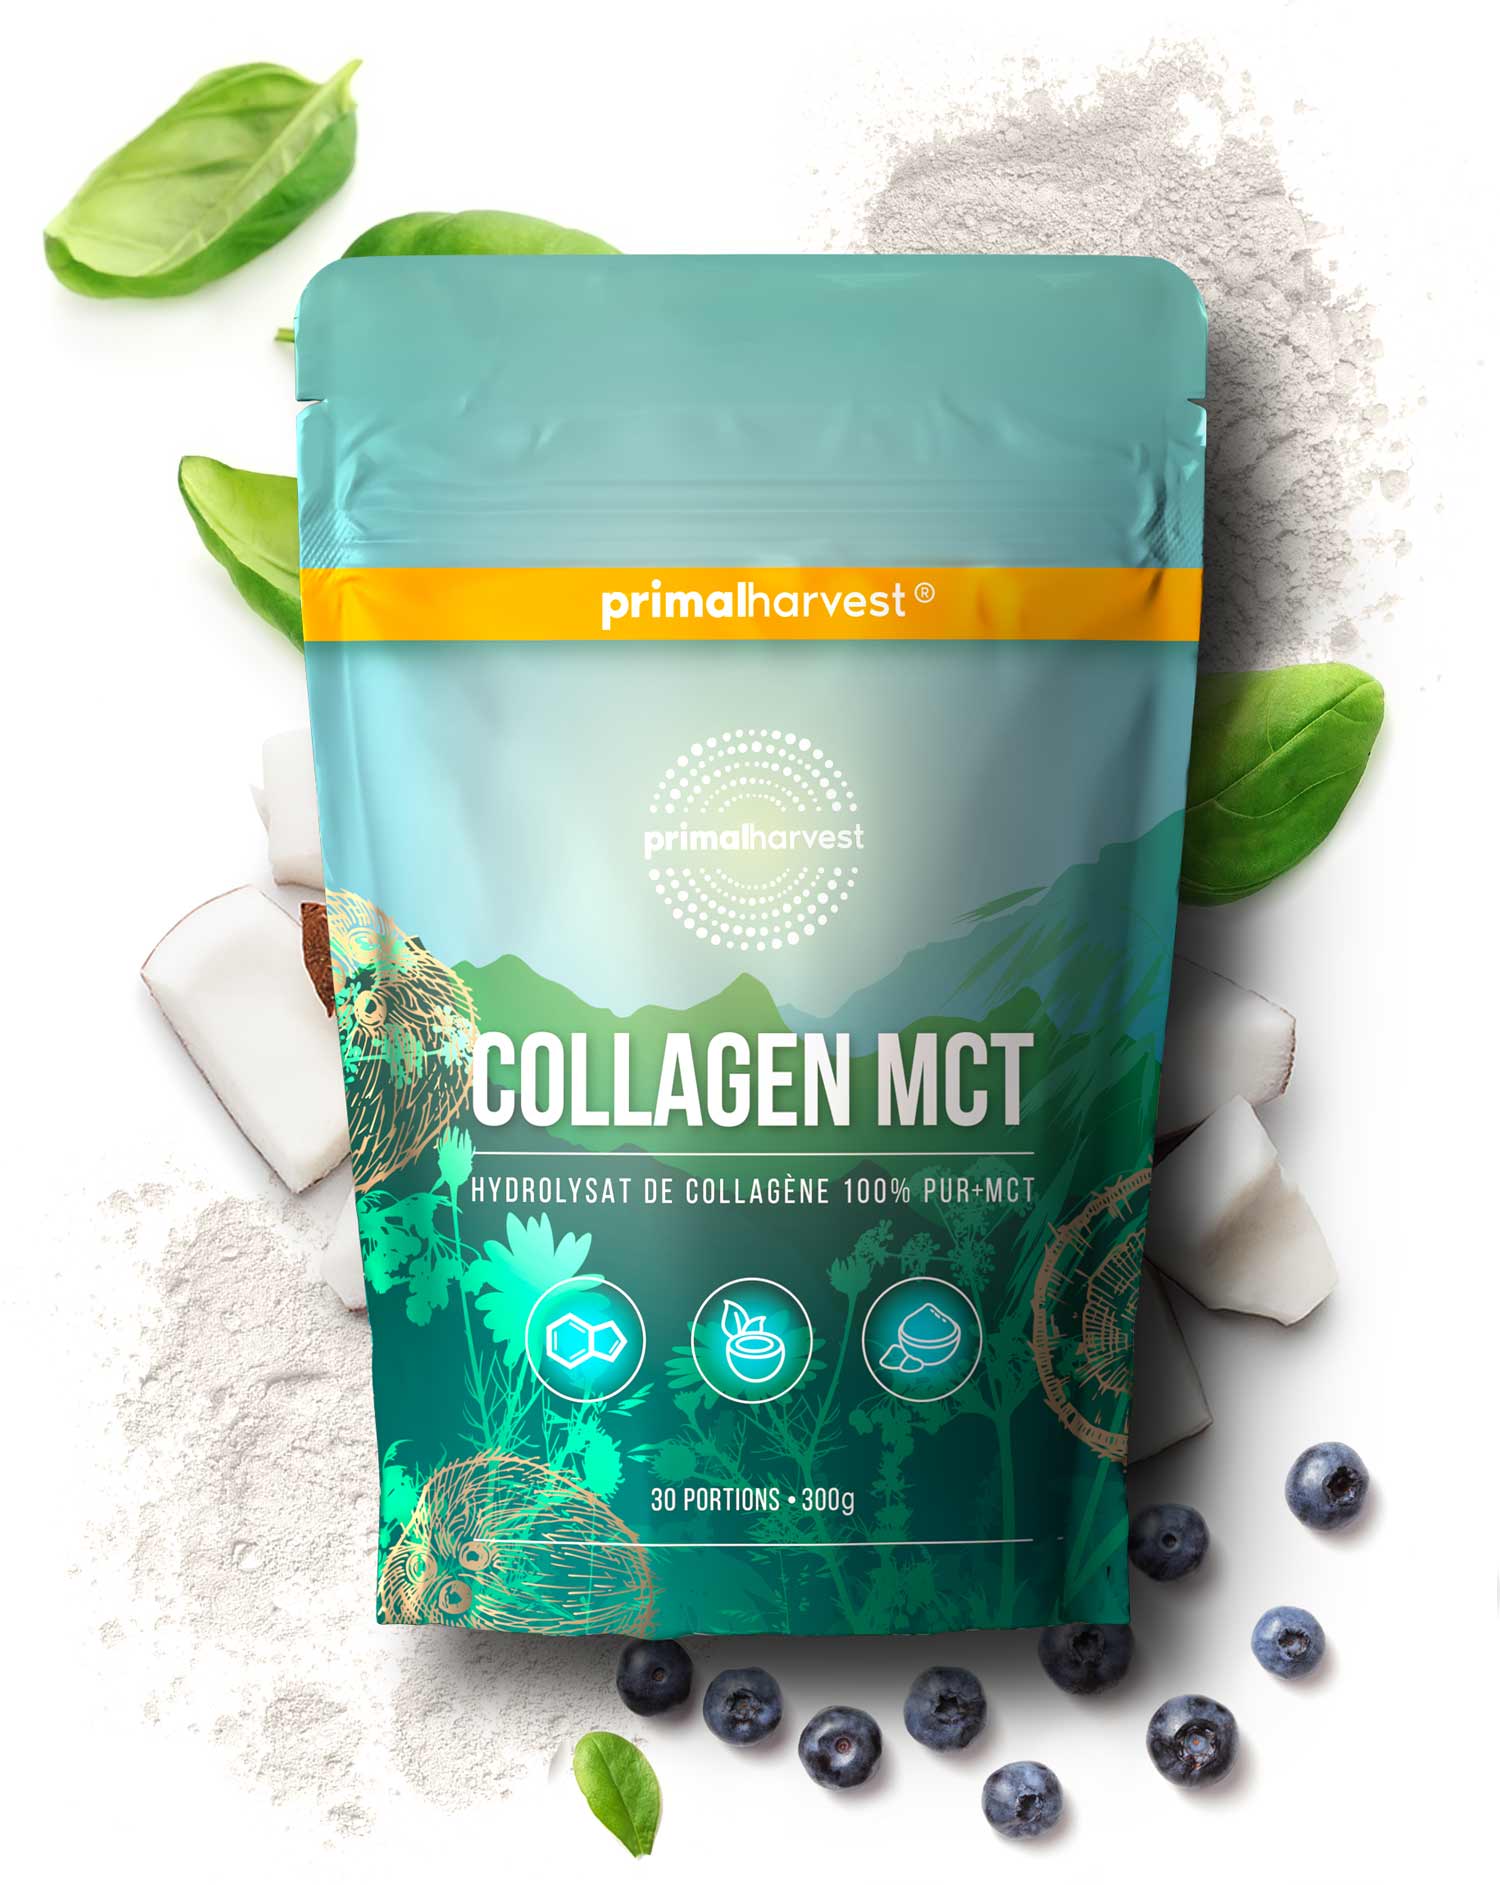 Collagen MCT